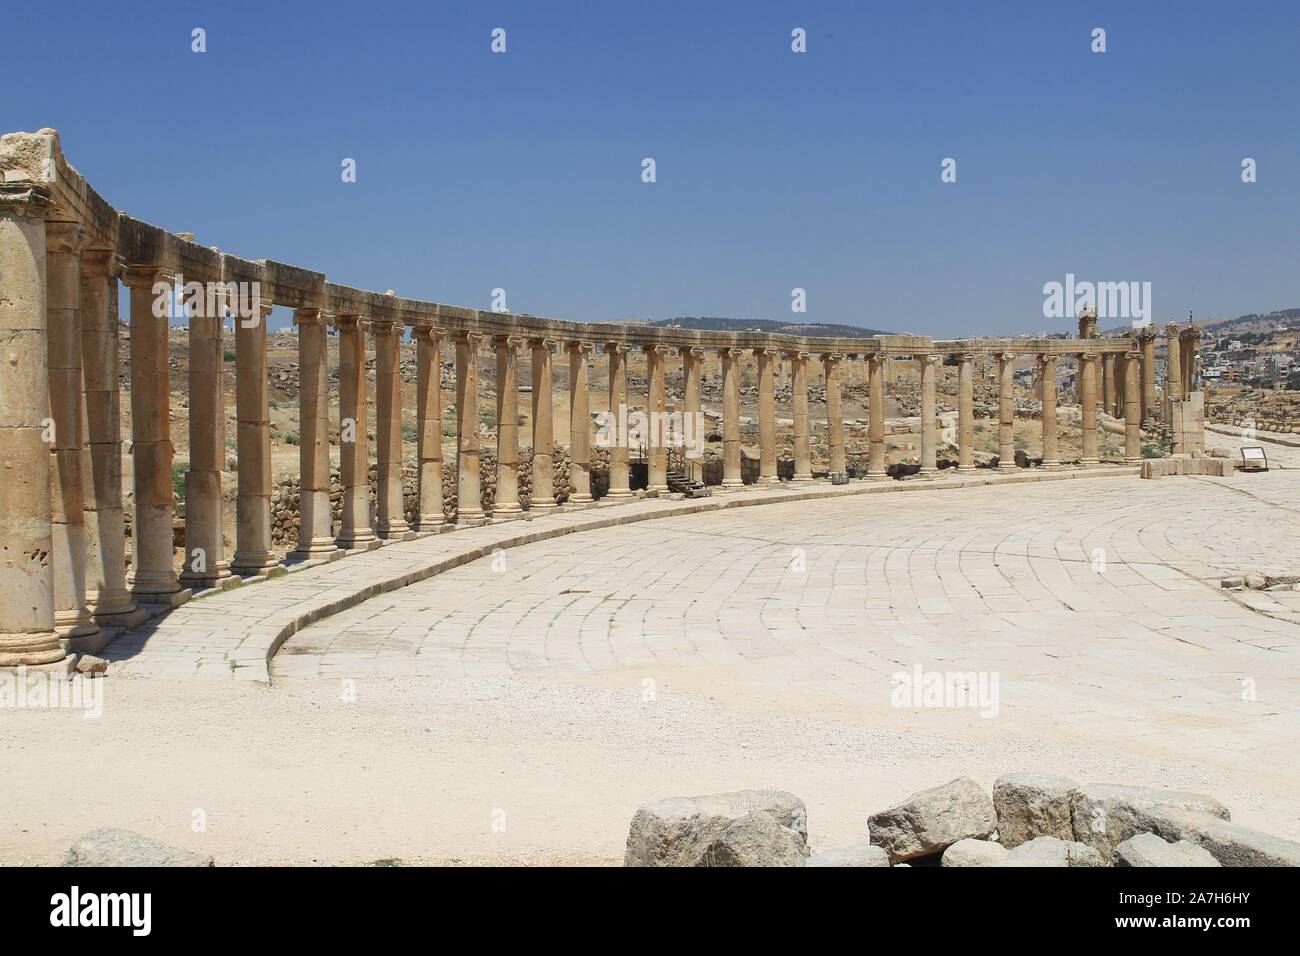 JORDANIA. JERASH AMMAN. Jerash , es el sitio de las ruinas de la ciudad grecorromana de Gerasa, también conocida como Antioquía en el Río Dorado. Jerash es considerada una de las ciudades romanas más importantes y mejor conservadas del Cercano Oriente. Era una ciudad de la Decápolis.. PLAZA OVAL. SU FUNCIO0N POSIBLEMENTE FUERA LA DE MERCADO. TIENE 56 COLUMNAS Y ESTA PERFECTAMENTE PAVIMENTADO. Stock Photo